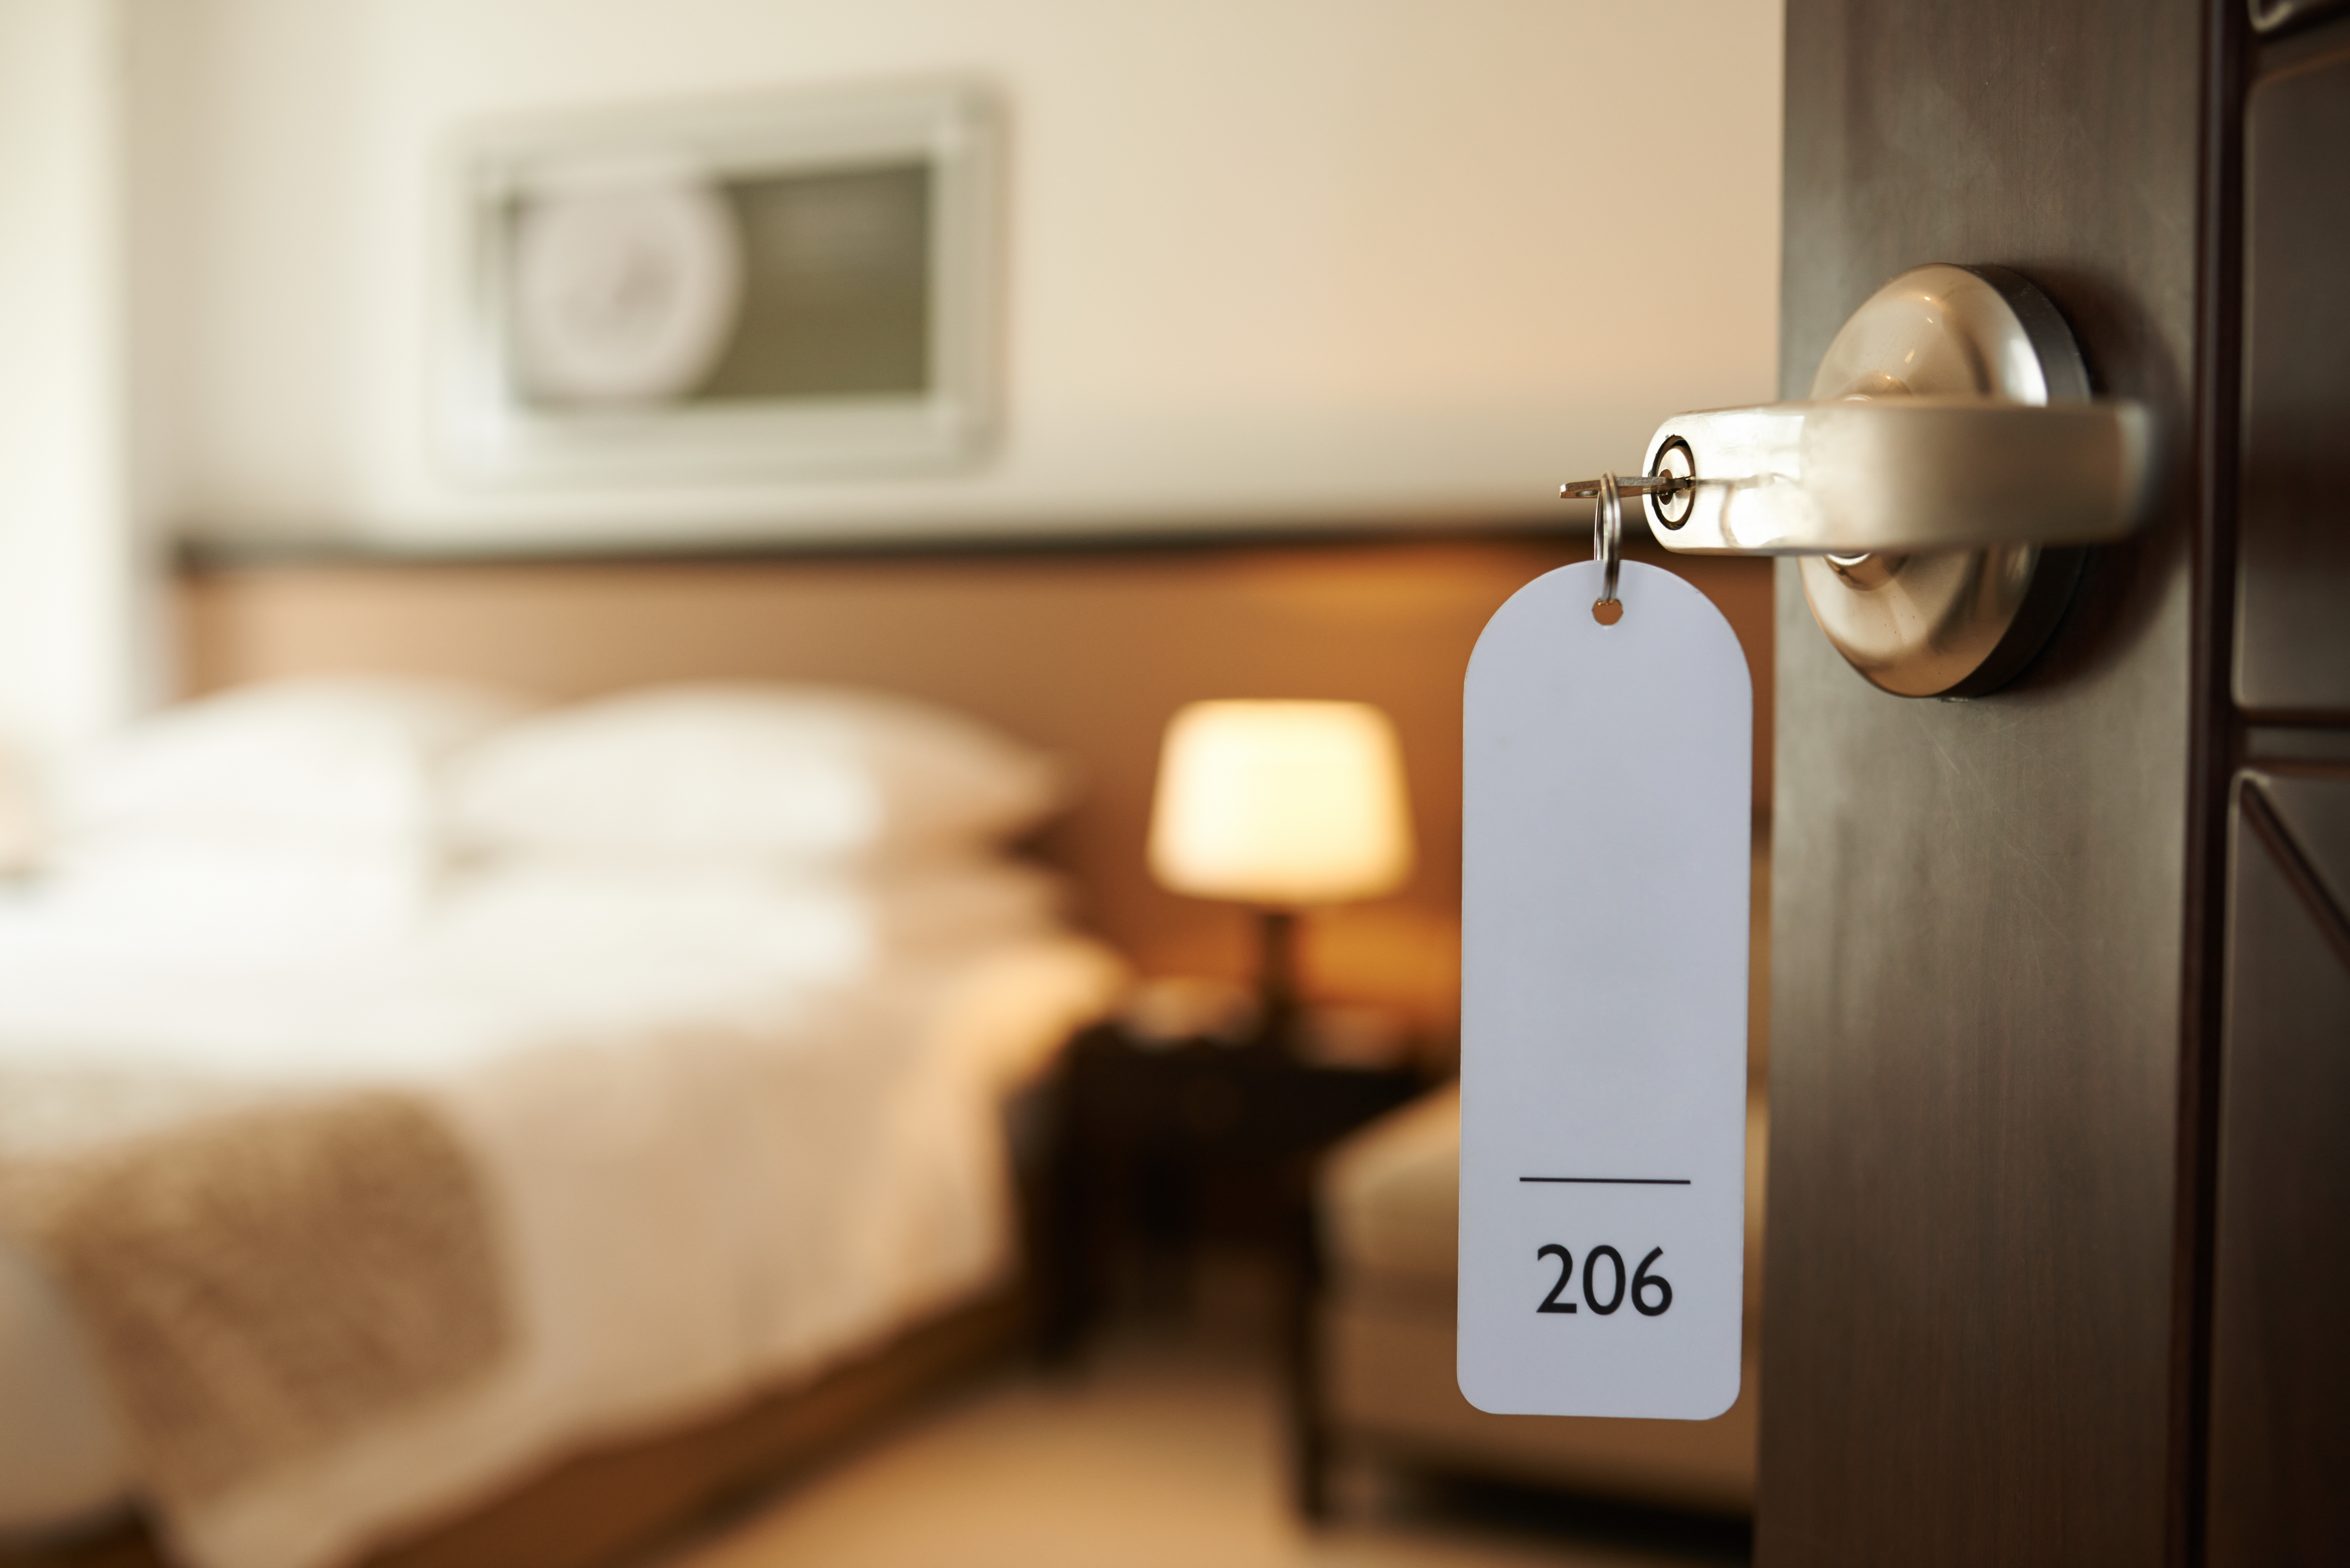 Kiderült, mi zavarja a legjobban a magyar utazókat a szállodai szobákban -  Blikk